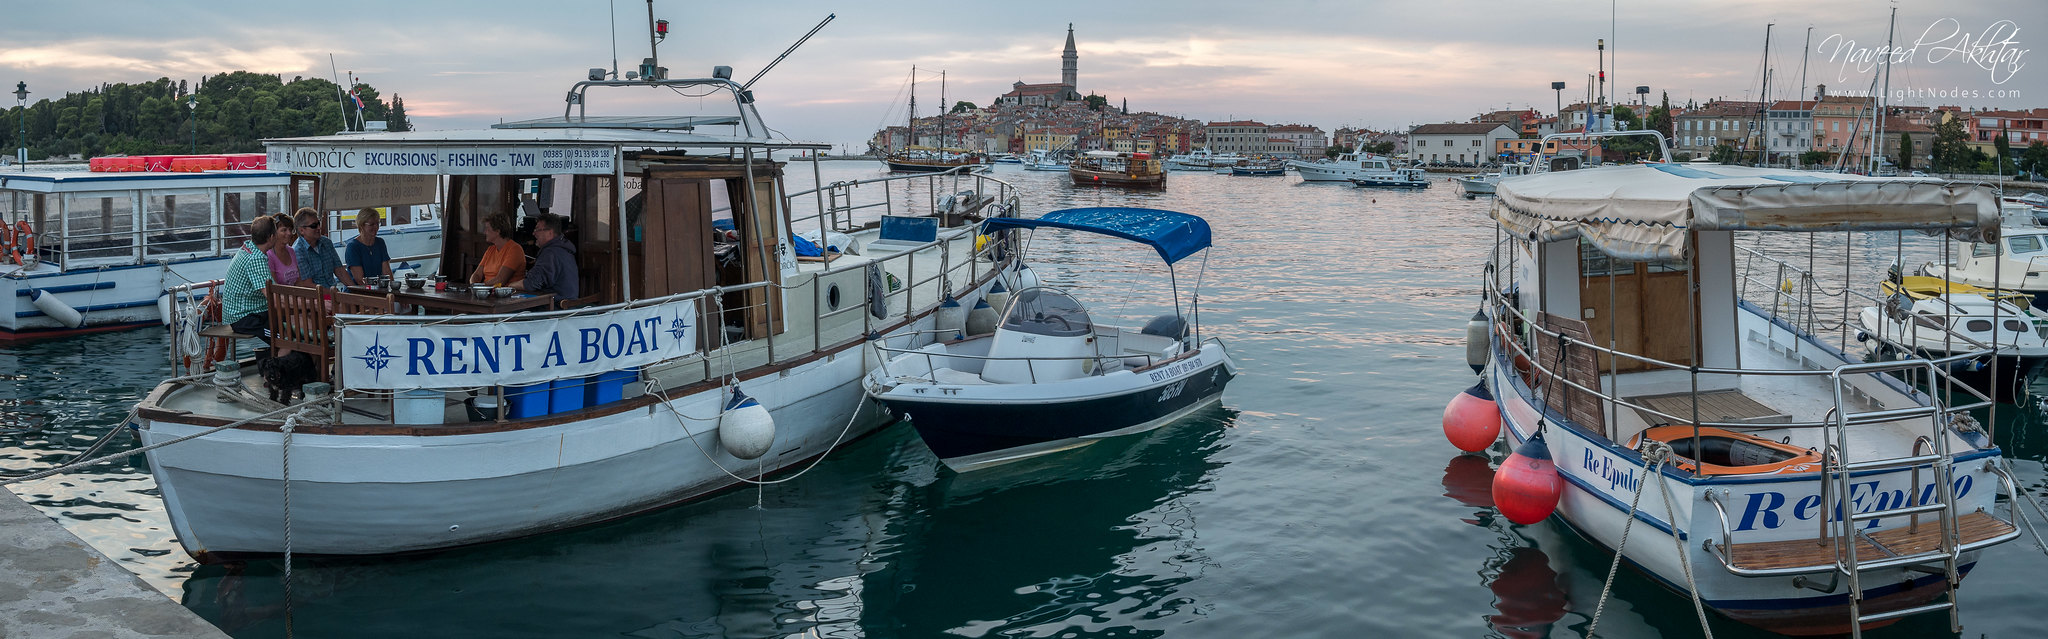 Little boat party at coastal town Rovinj, Croatia with Lumix GX7 4K